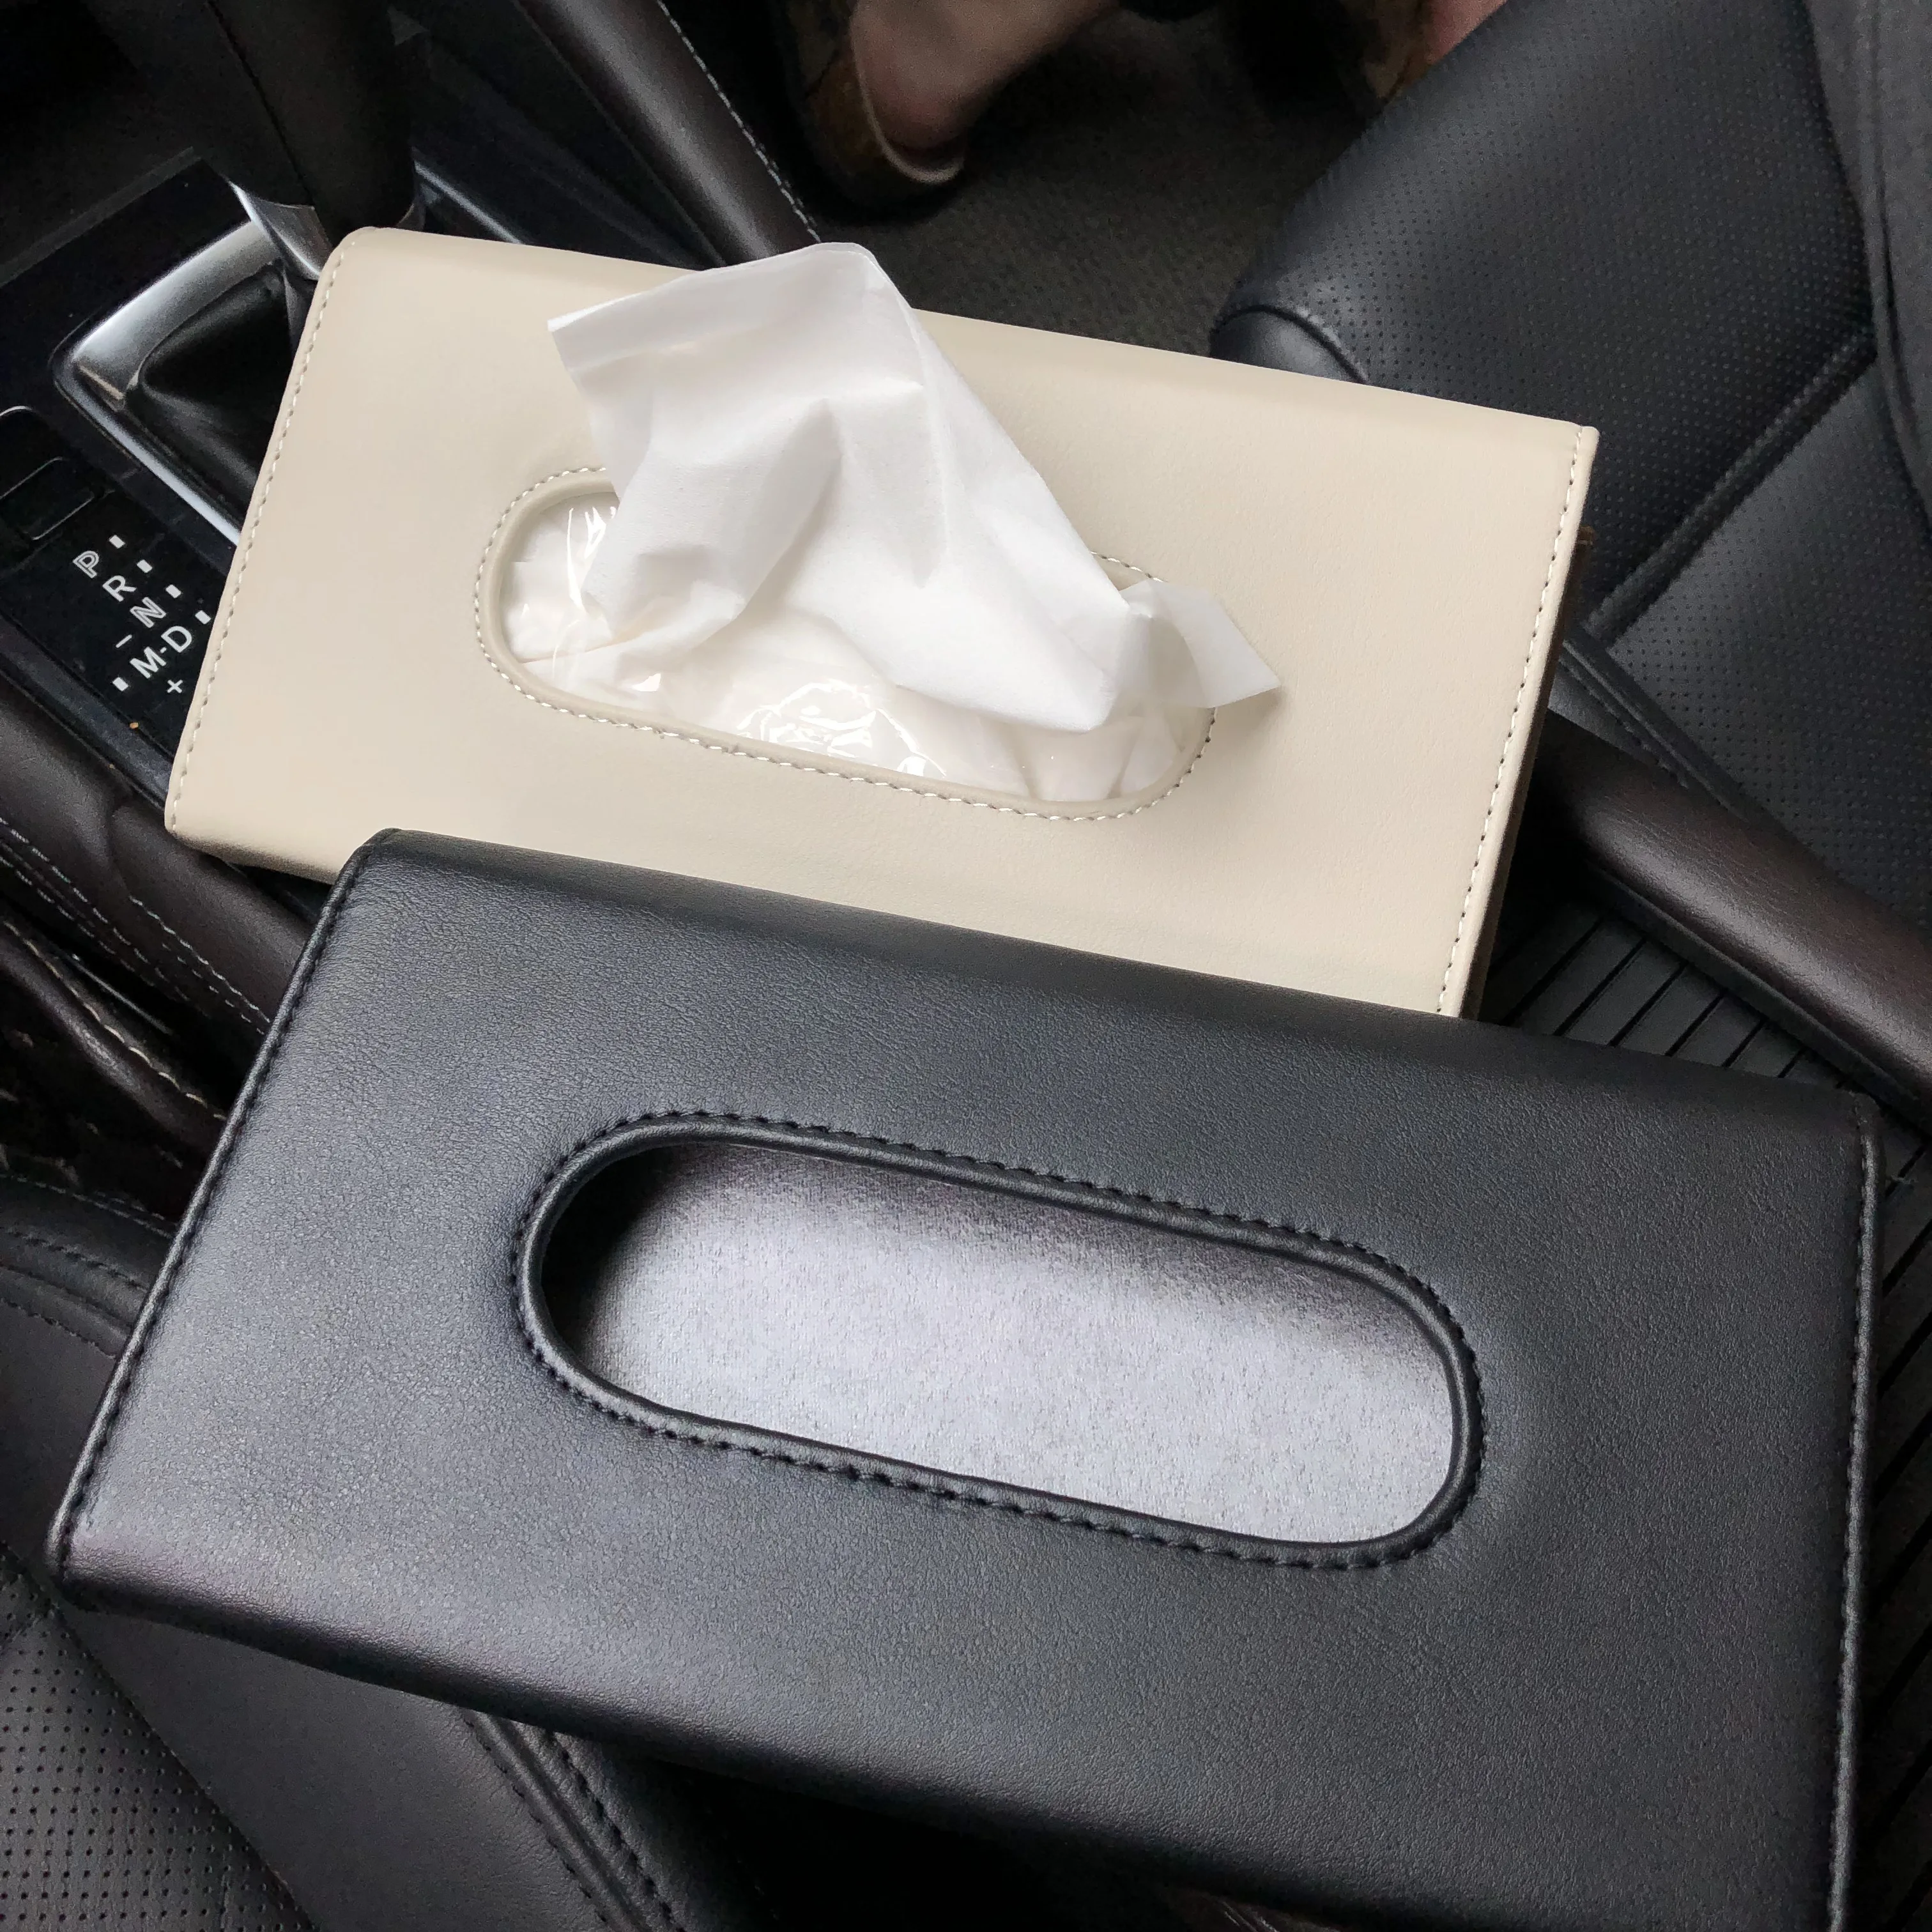 

Car-Styling Tissue Boxes Case for SsangYong Actyon Turismo Rodius Rexton Korando Kyron Musso Sports XLV Tivolan LIV-2 XAVL